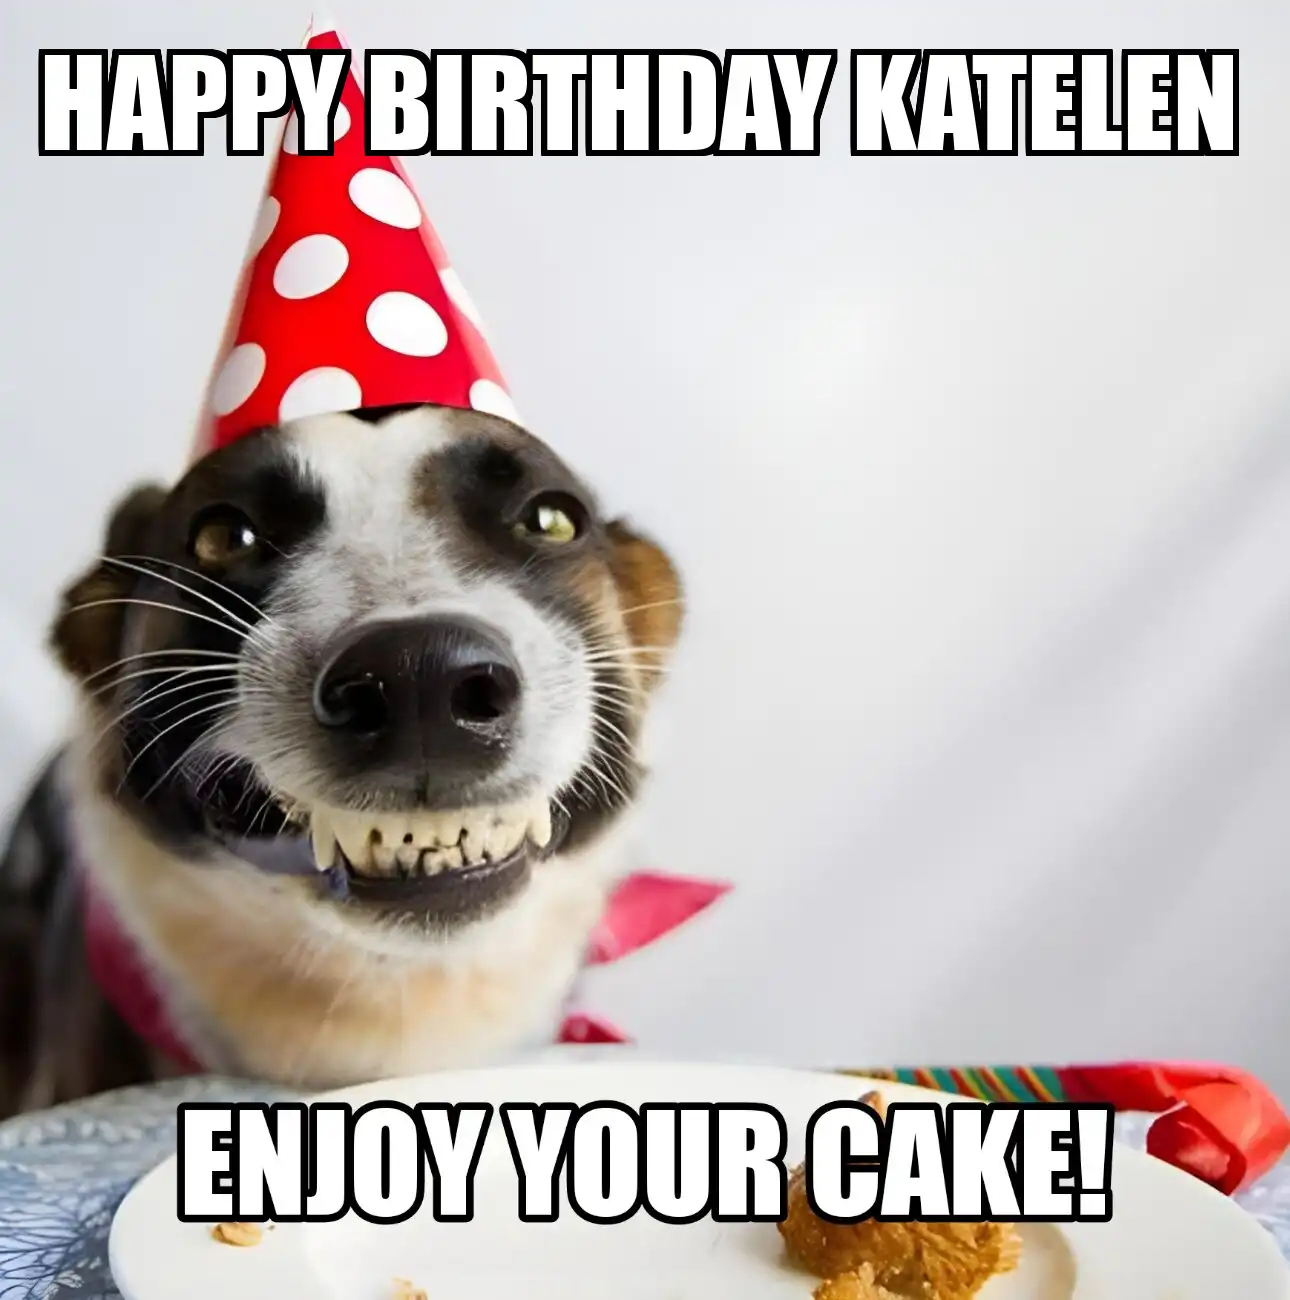 Happy Birthday Katelen Enjoy Your Cake Dog Meme